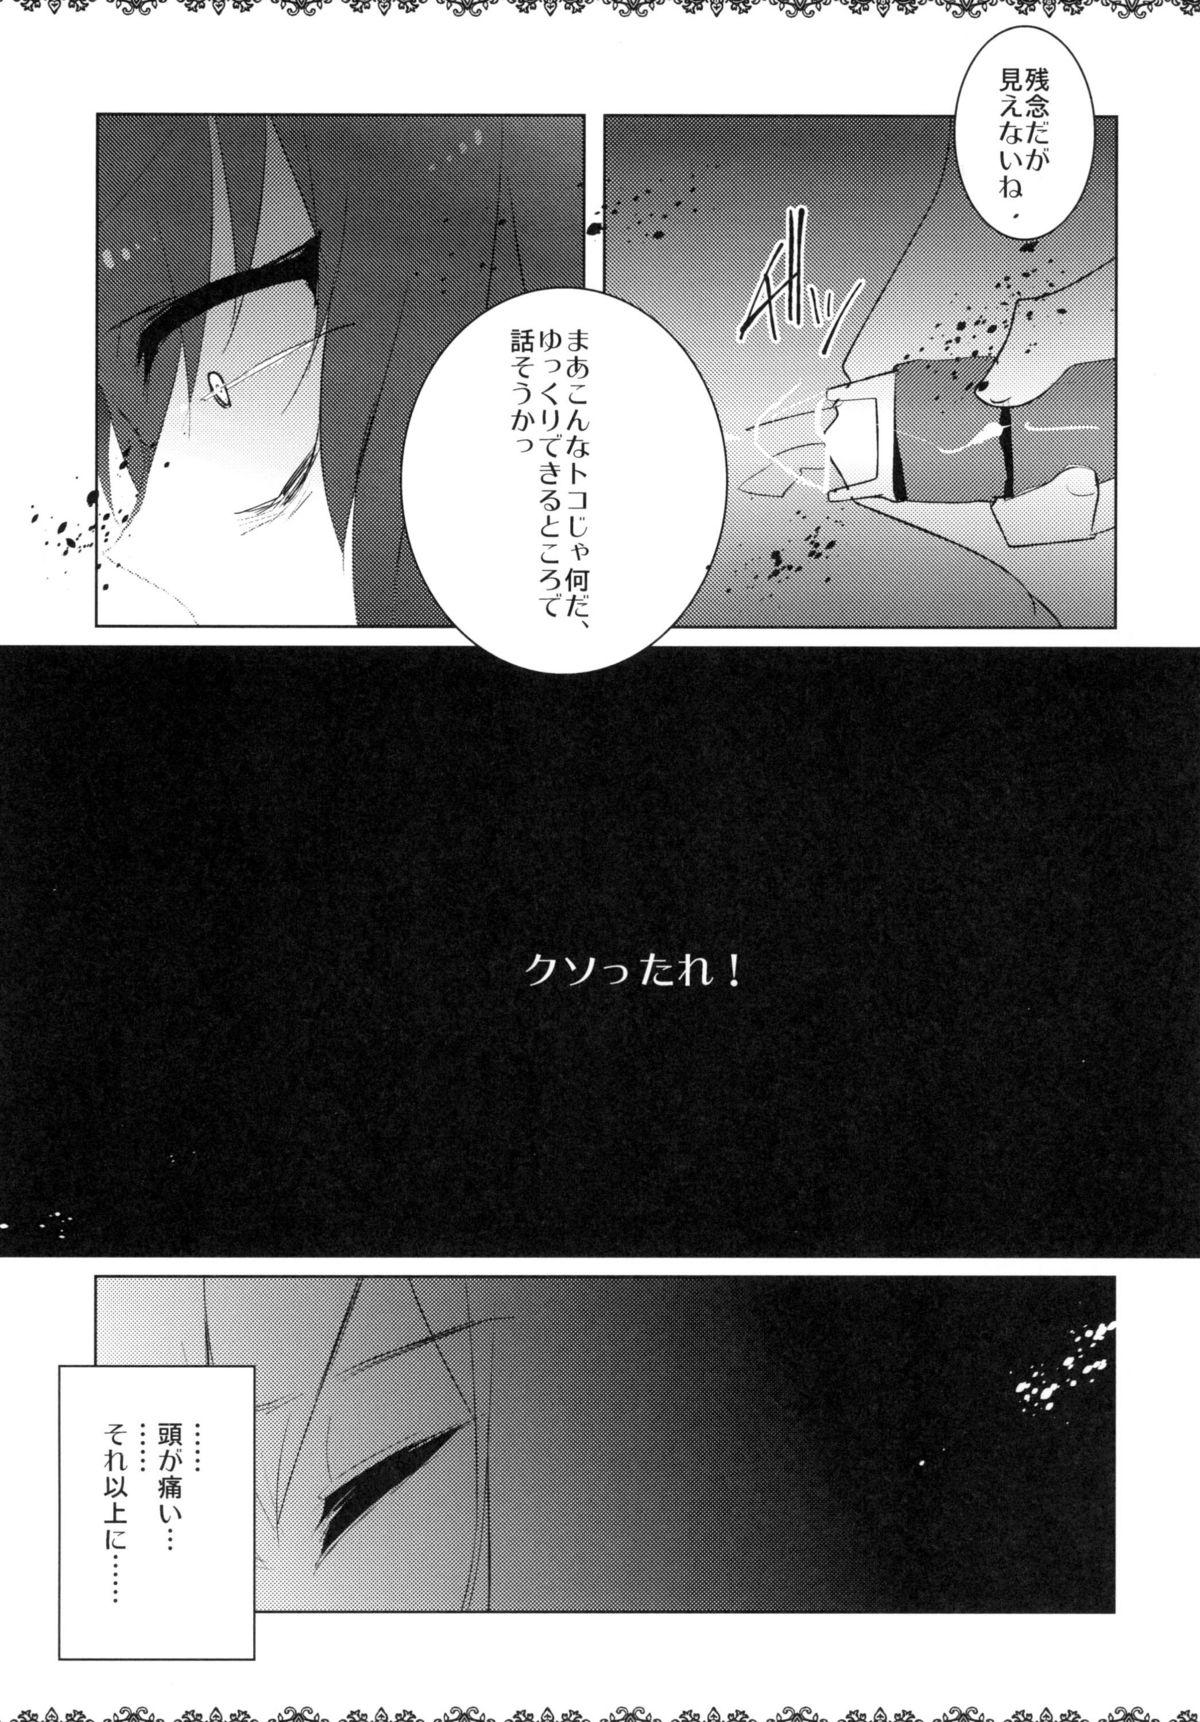 Cocksucking Rinraku Intou no Kurisu - Steinsgate Cut - Page 7